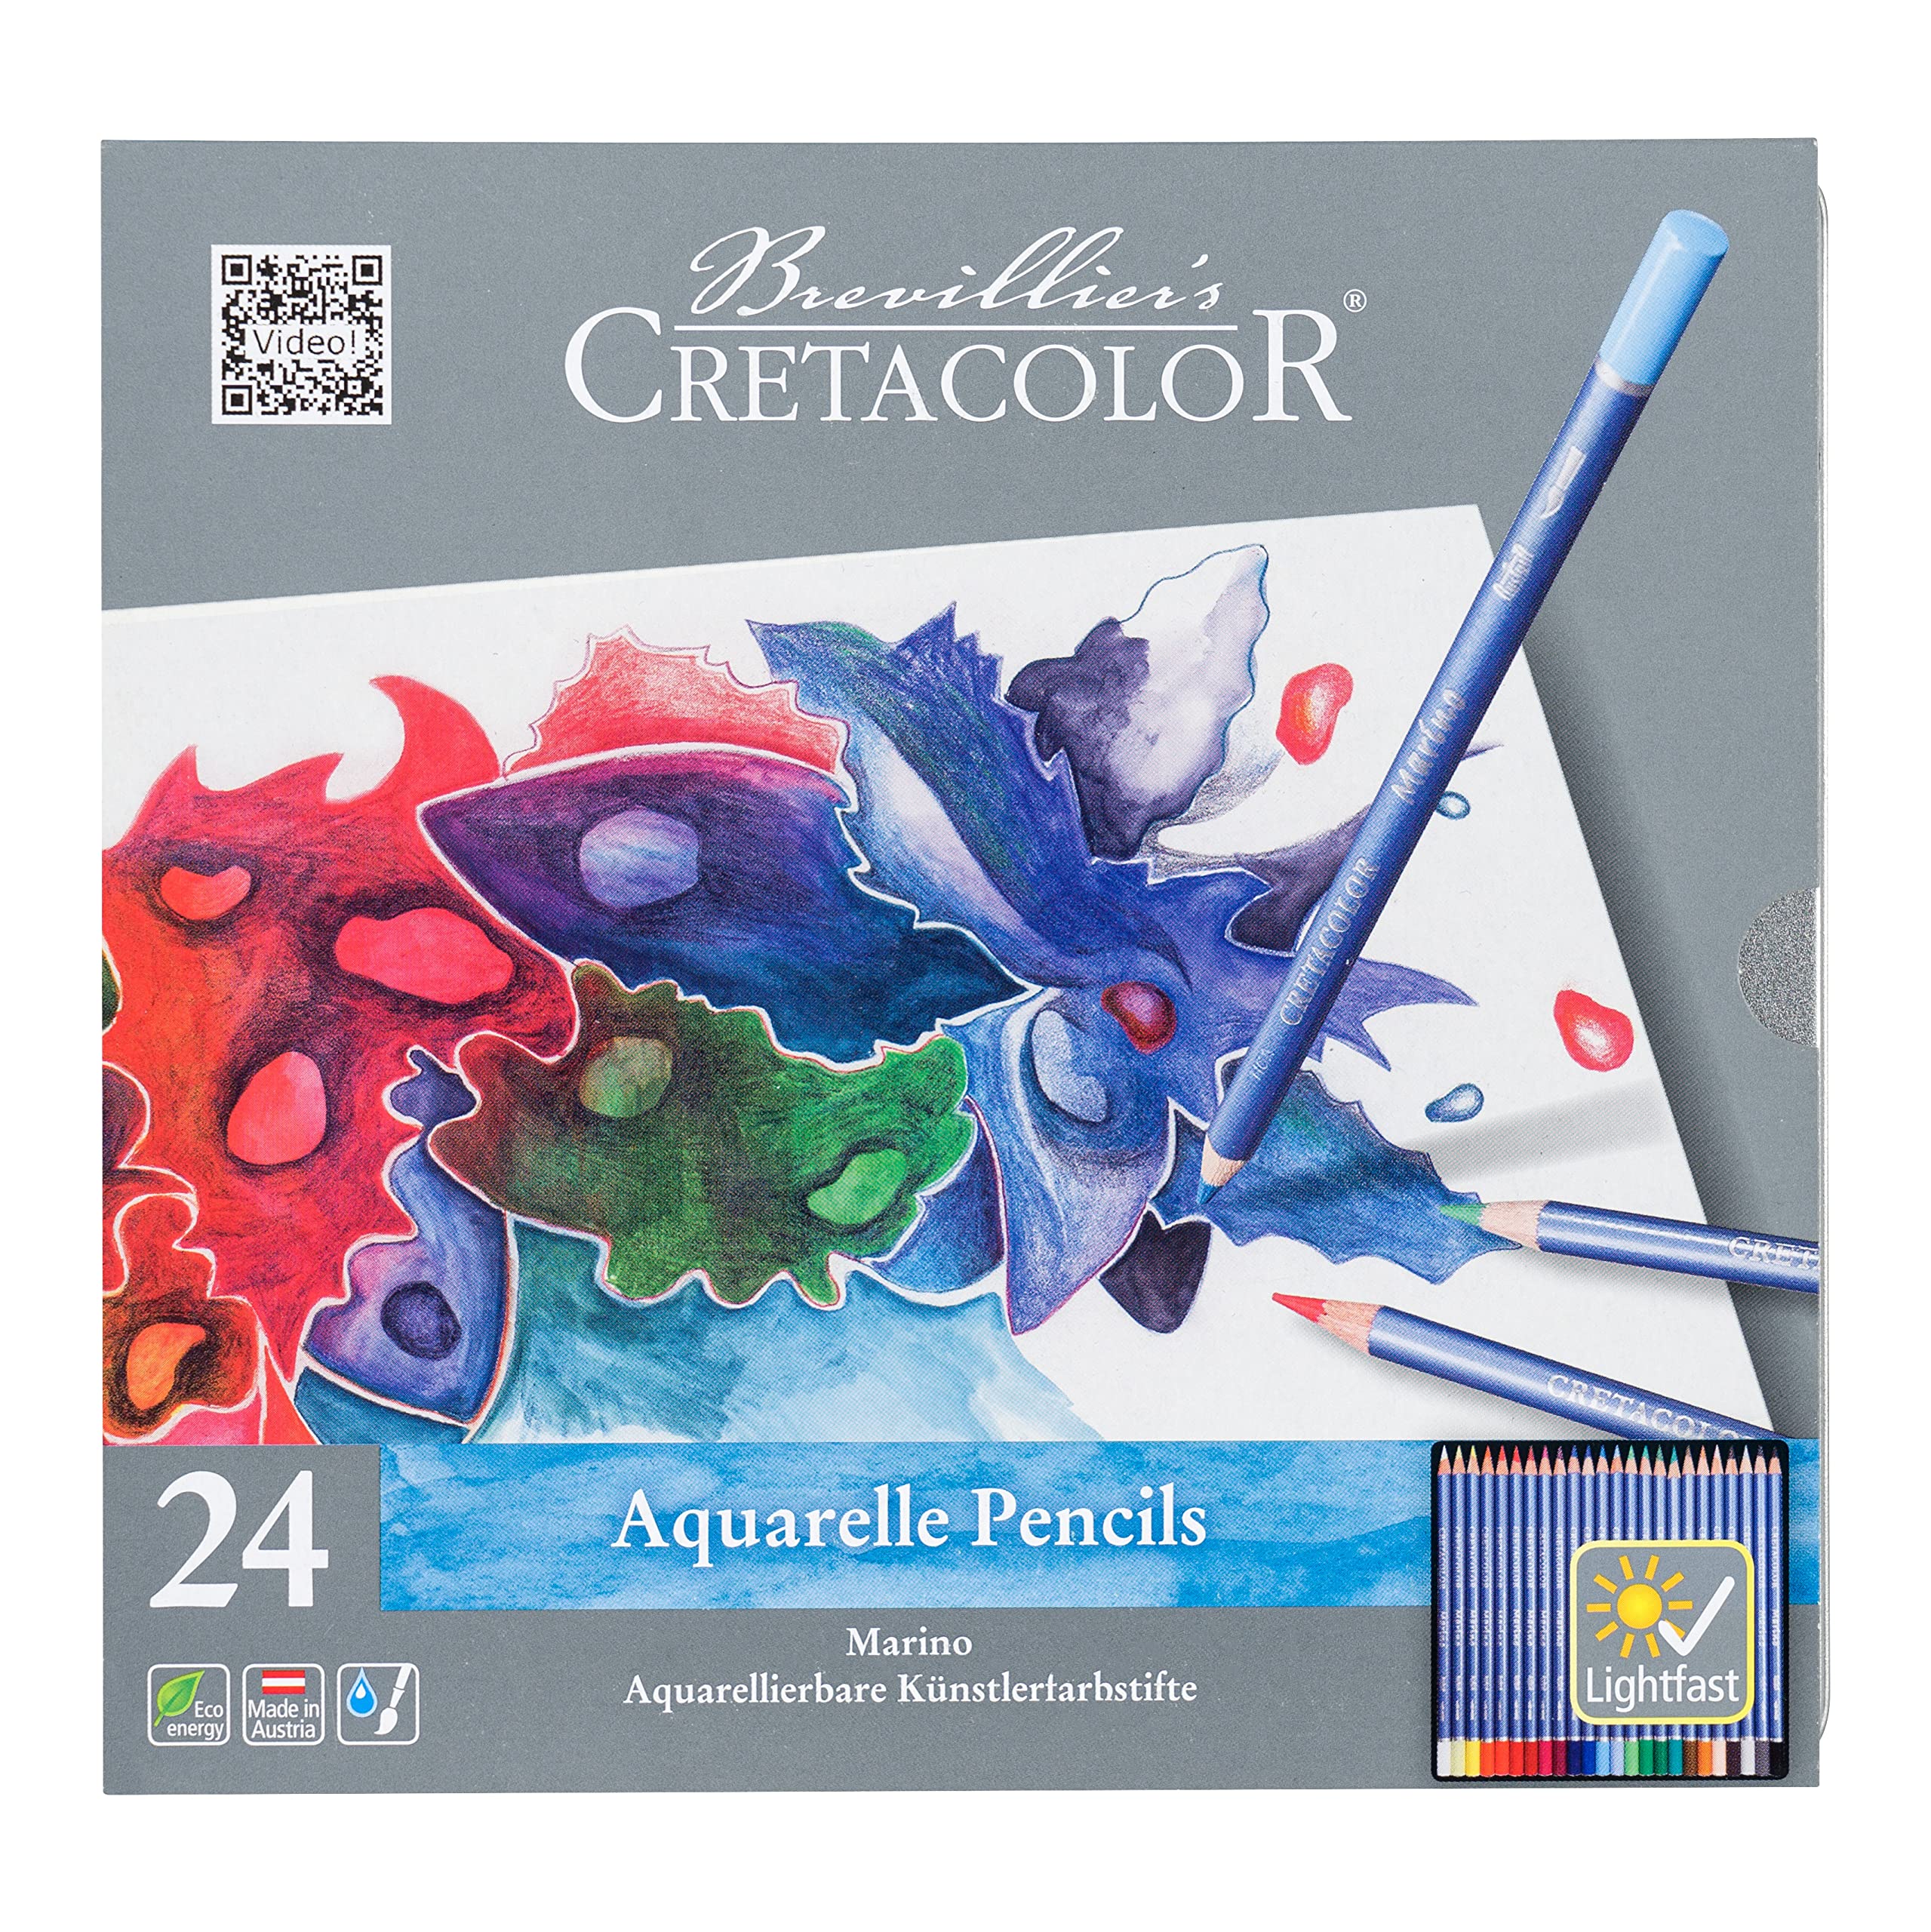 Cretacolor Marino Aquarellstift, 24 Farben sort., Metalletui